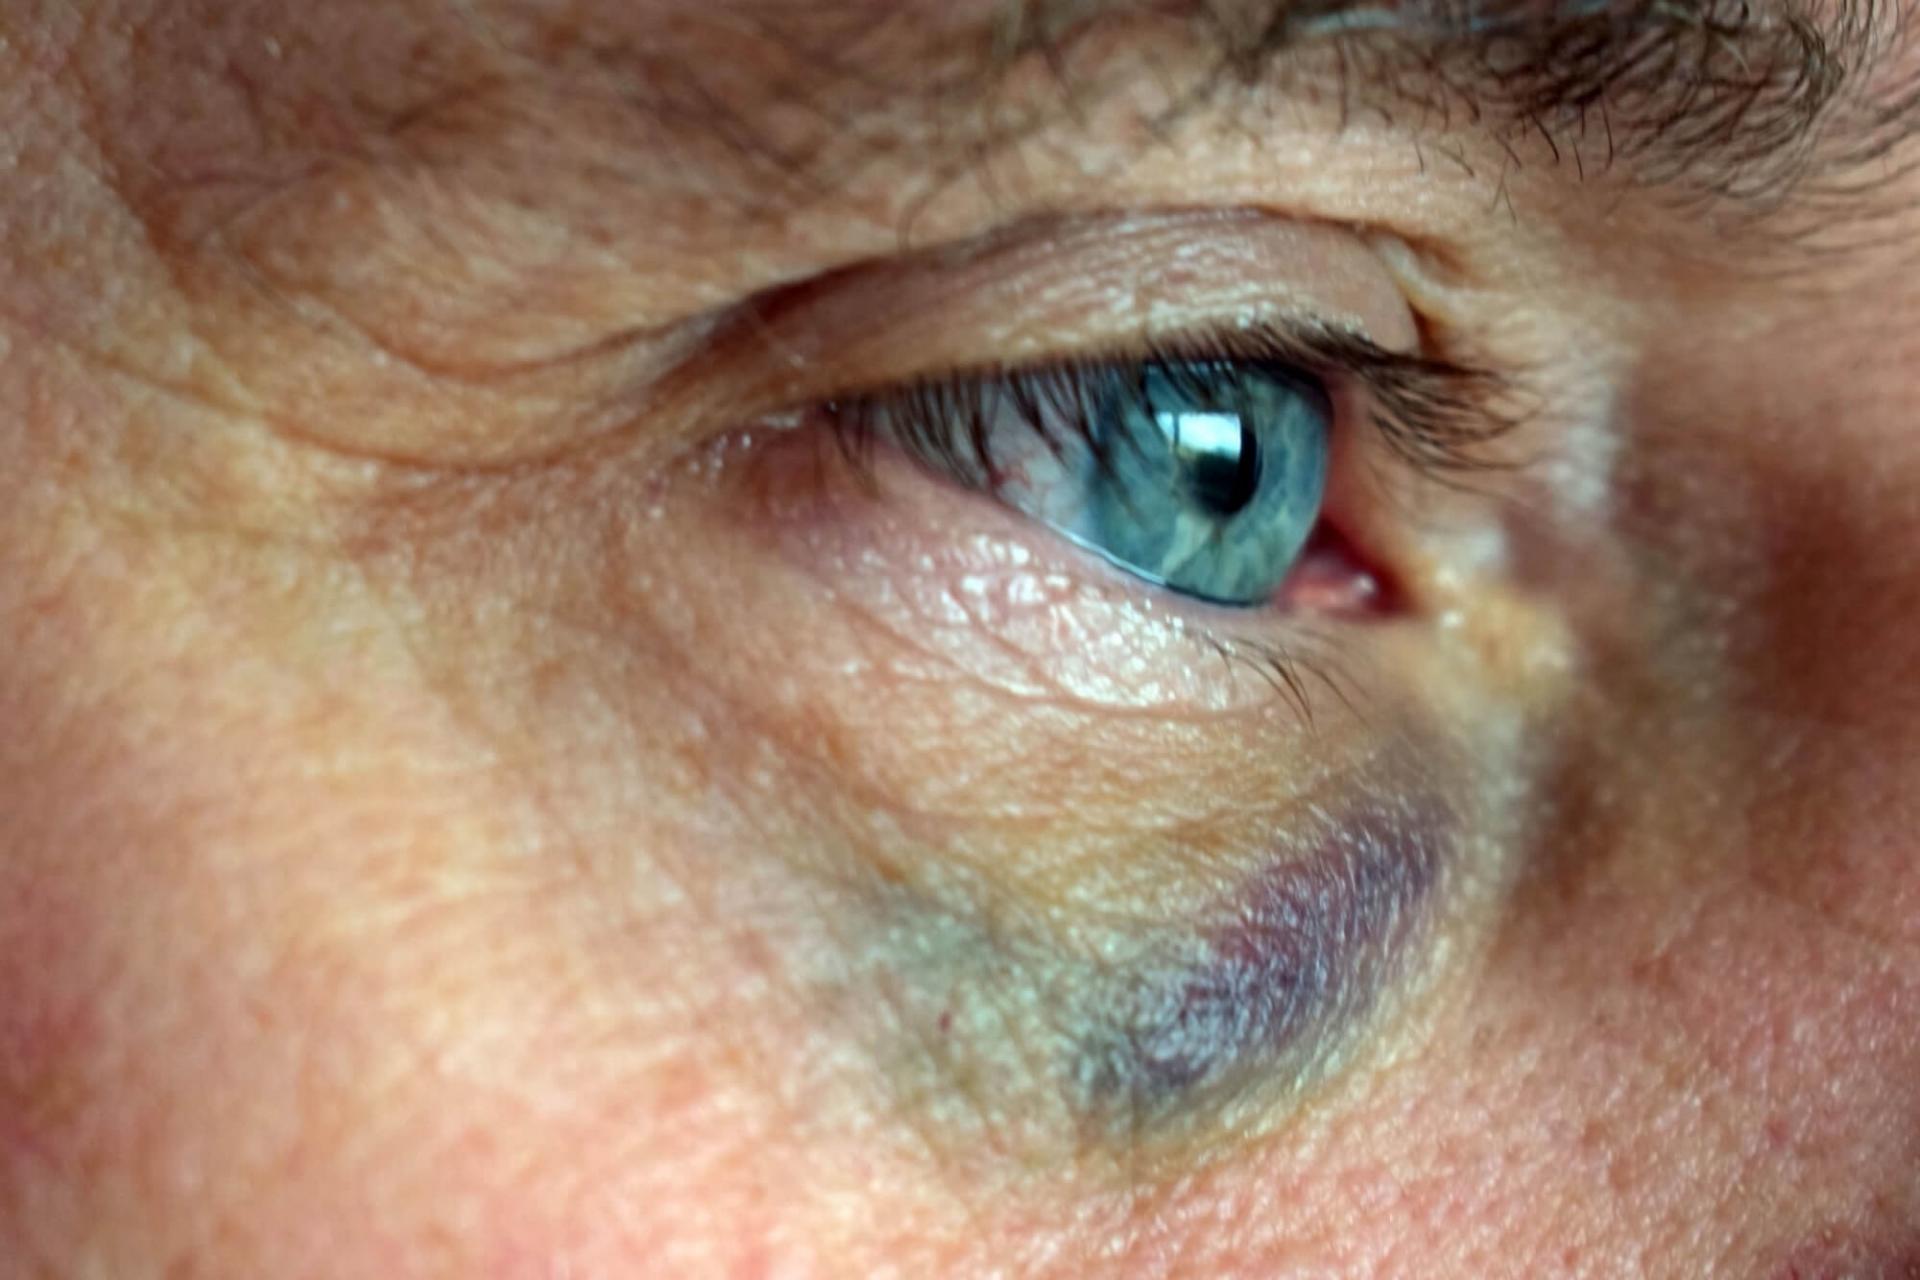 Tylpän iskun seurauksena silmän verisuonet voivat rikkoutua ja silmän valkoinen osa (valkuainen) näyttää punaiselta ja verestävältä.